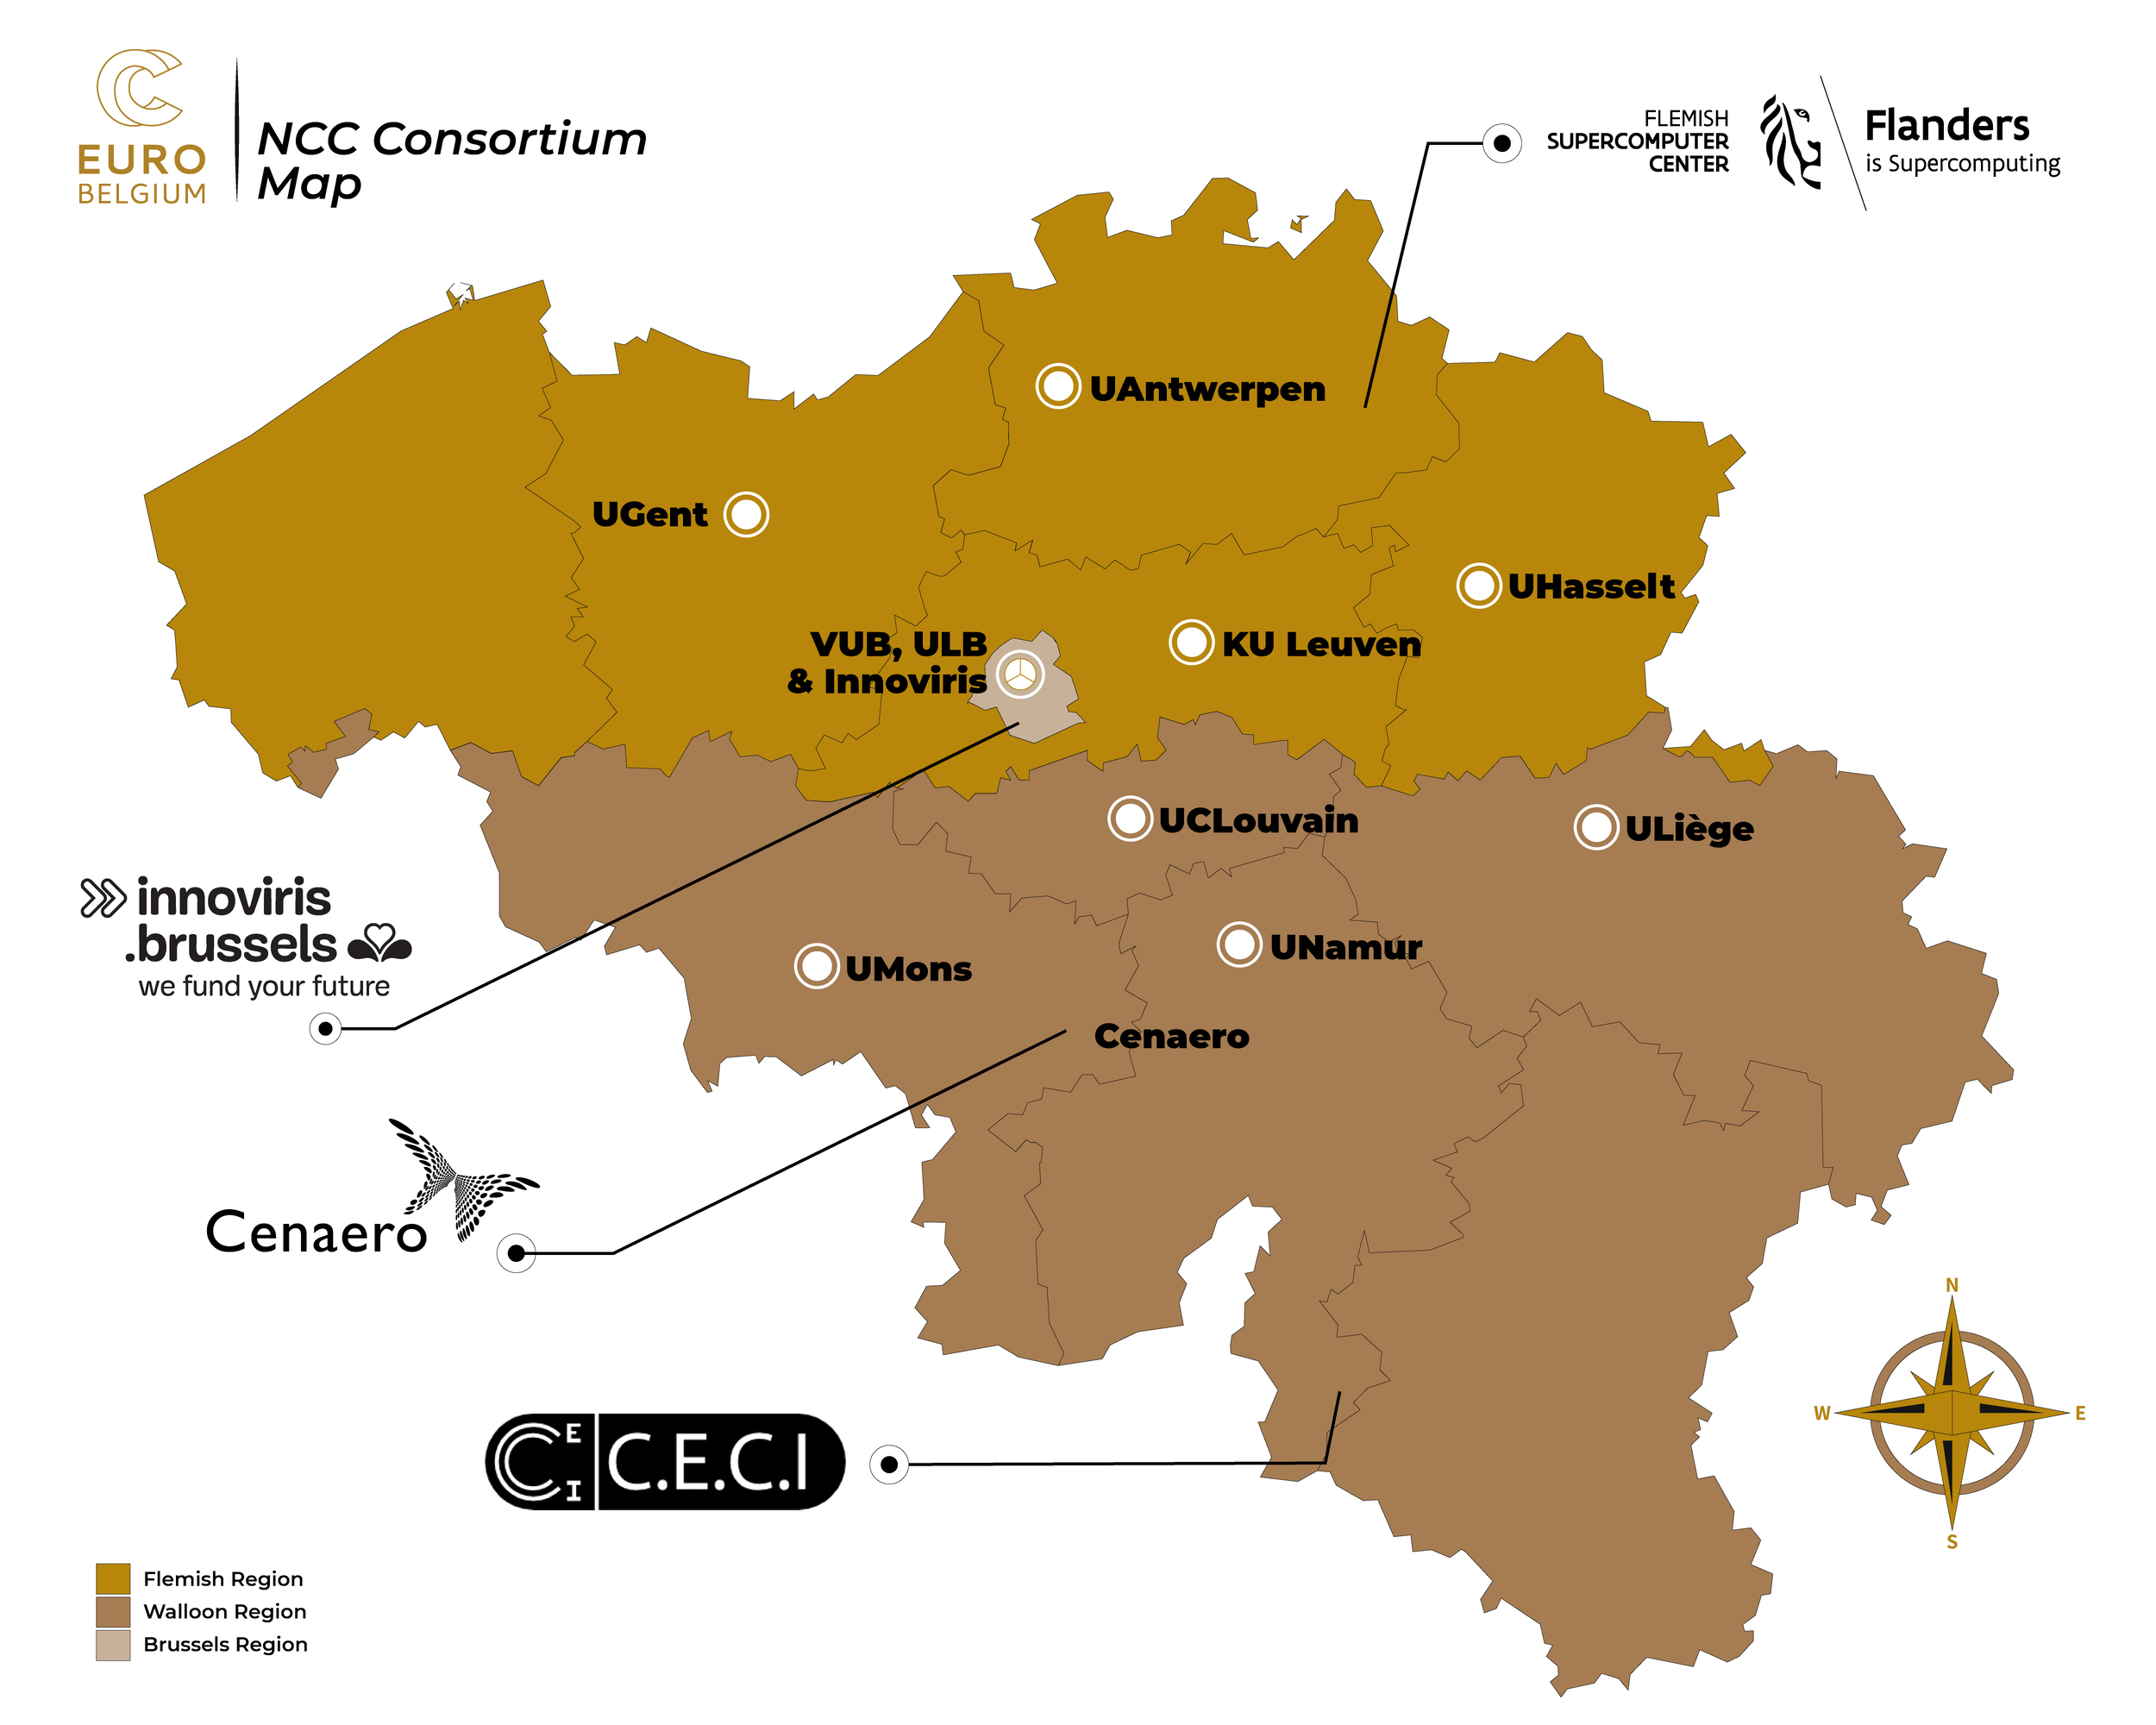 EuroCC Belgium consortium and partners